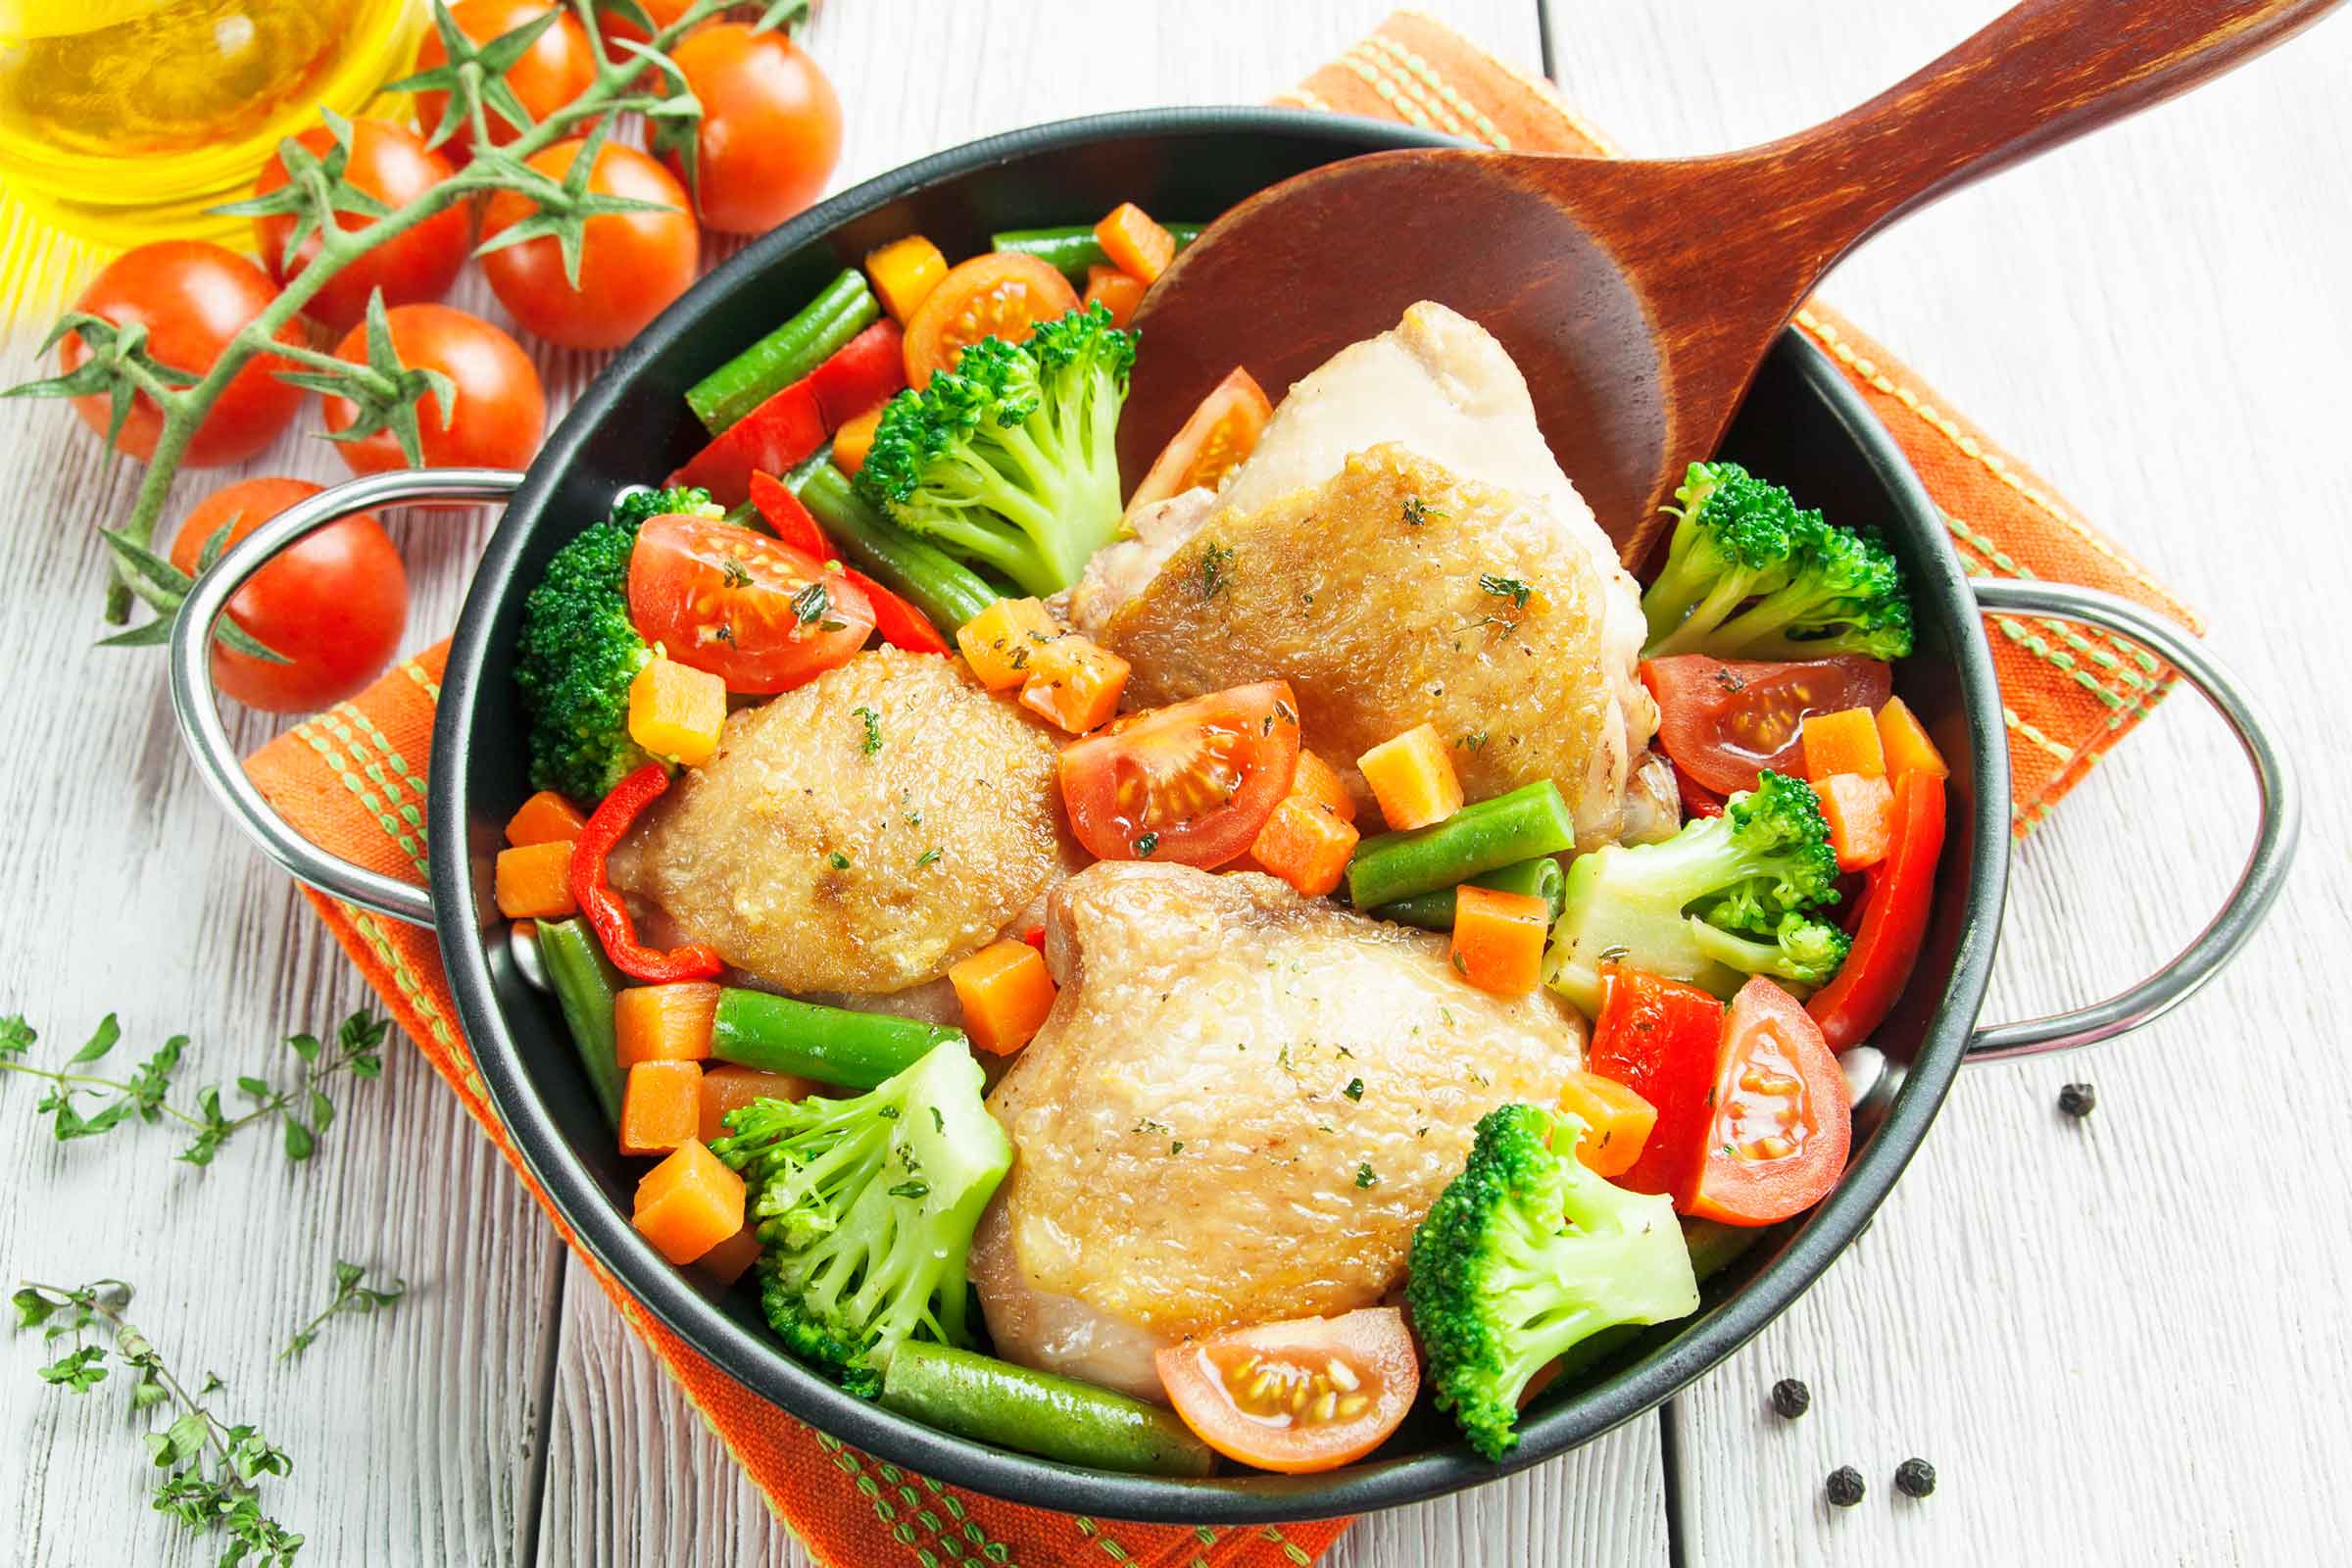 Варено жареная курица. Курица с овощами. Курочка с овощами. Красивые блюда. Мясные блюда с овощами.